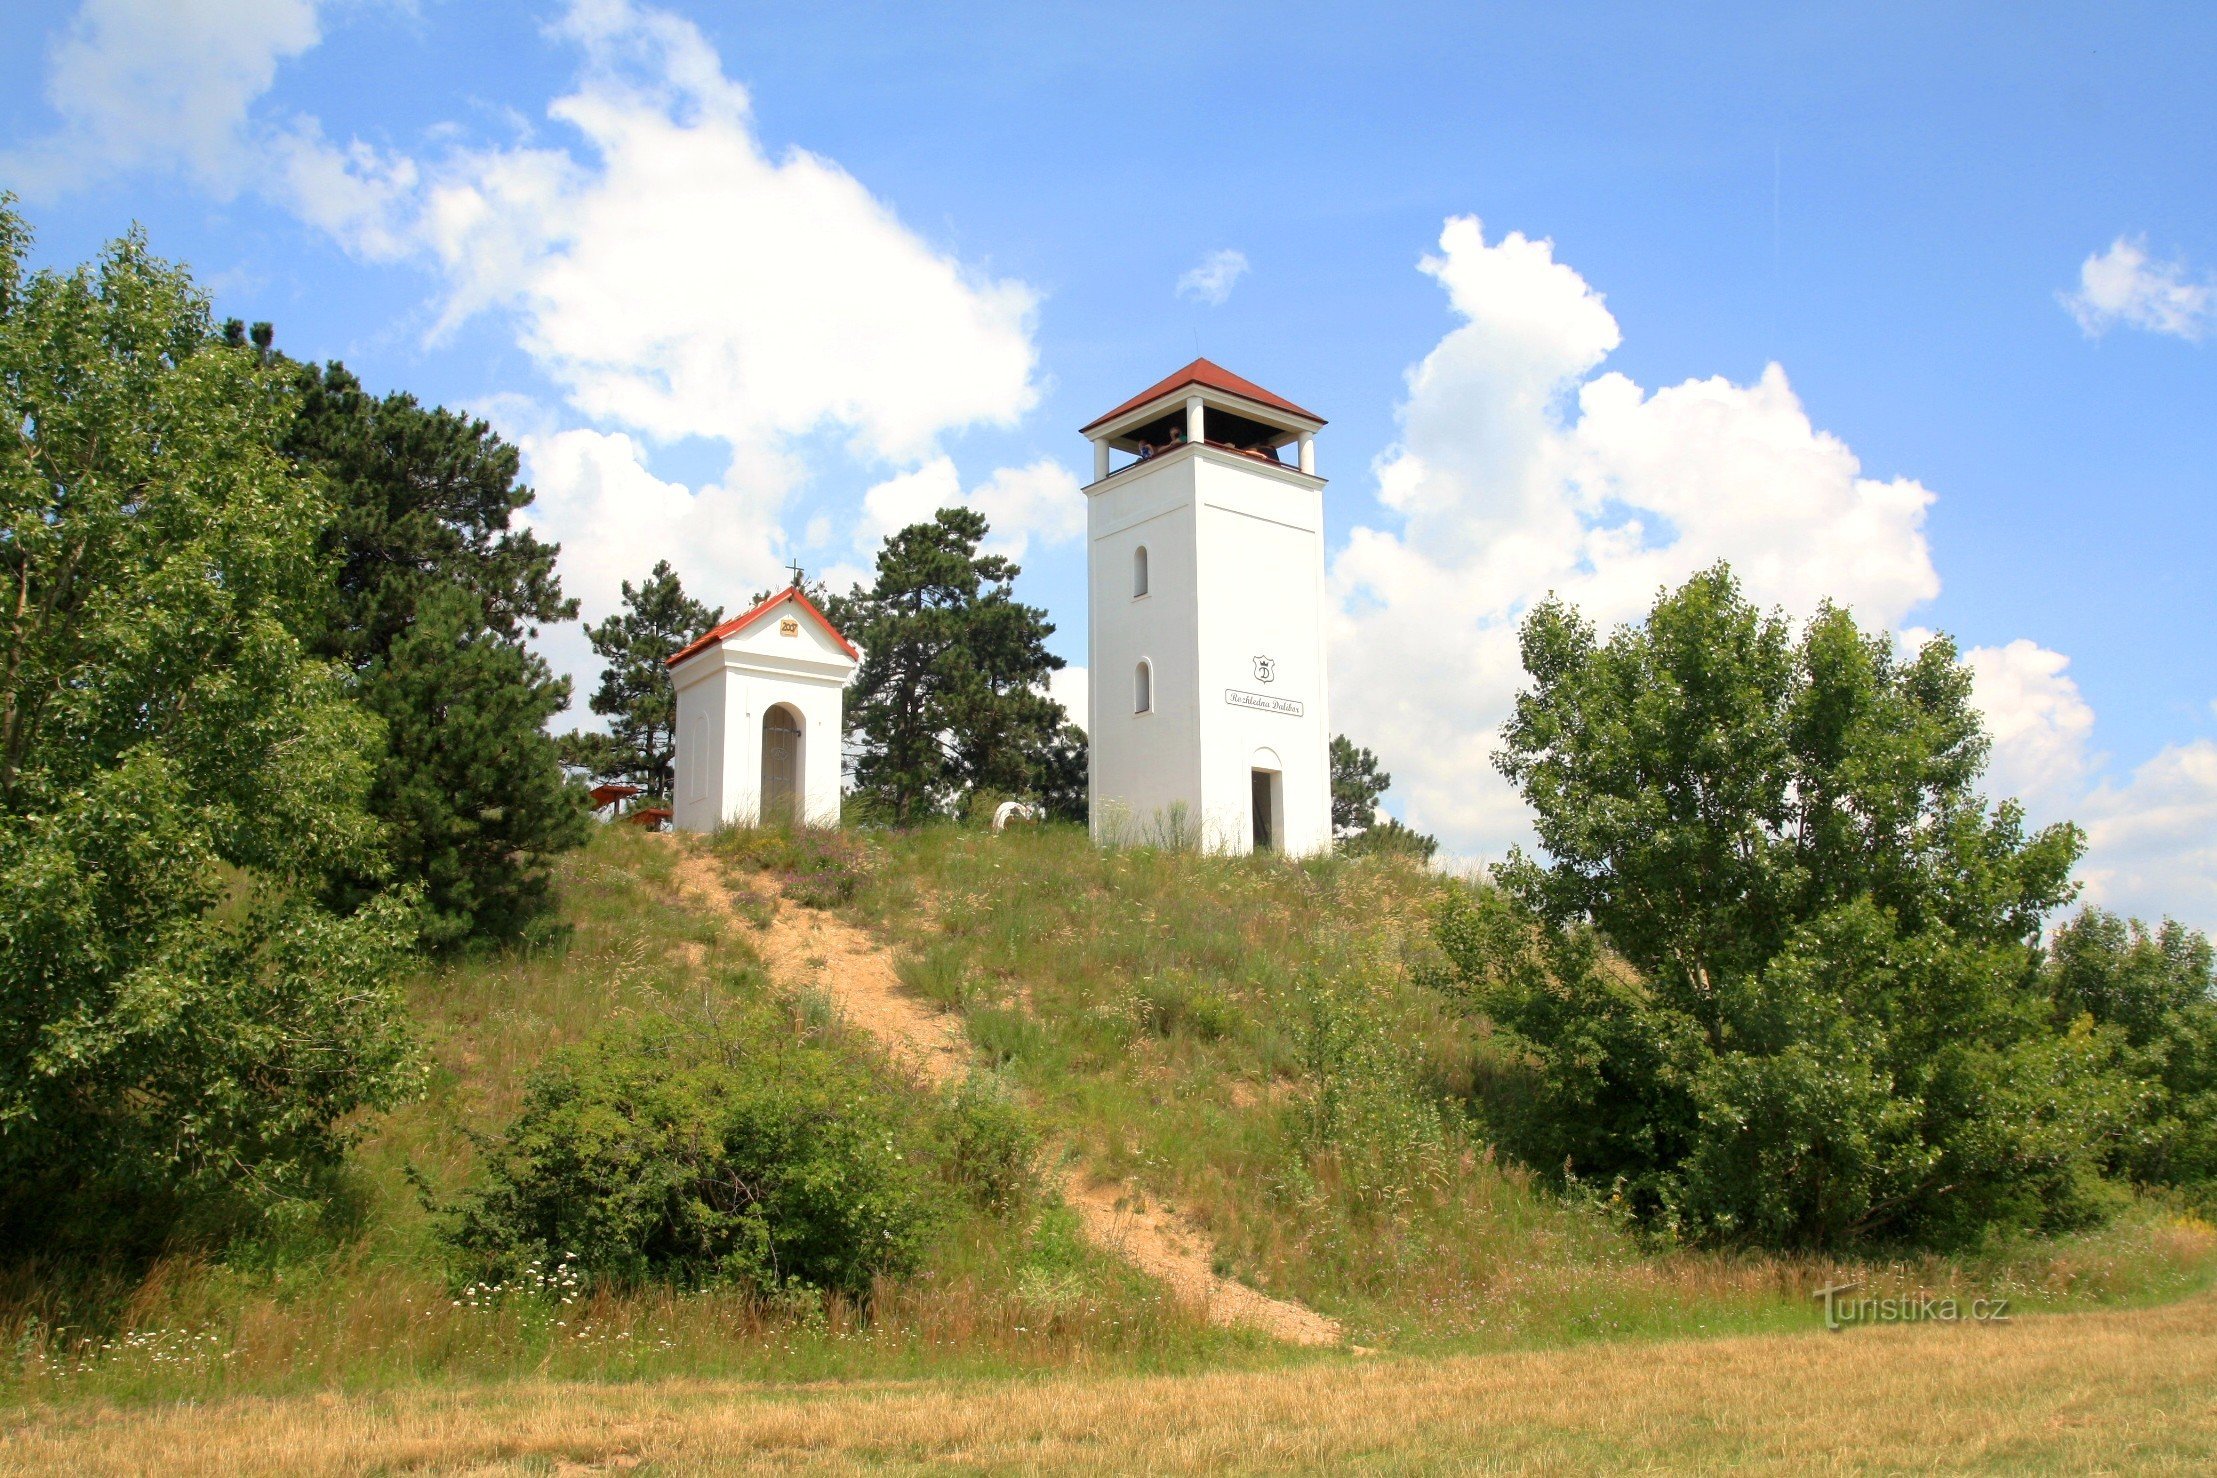 Вершина Голгофы с часовней св. Урбана и смотровая башня Далибор